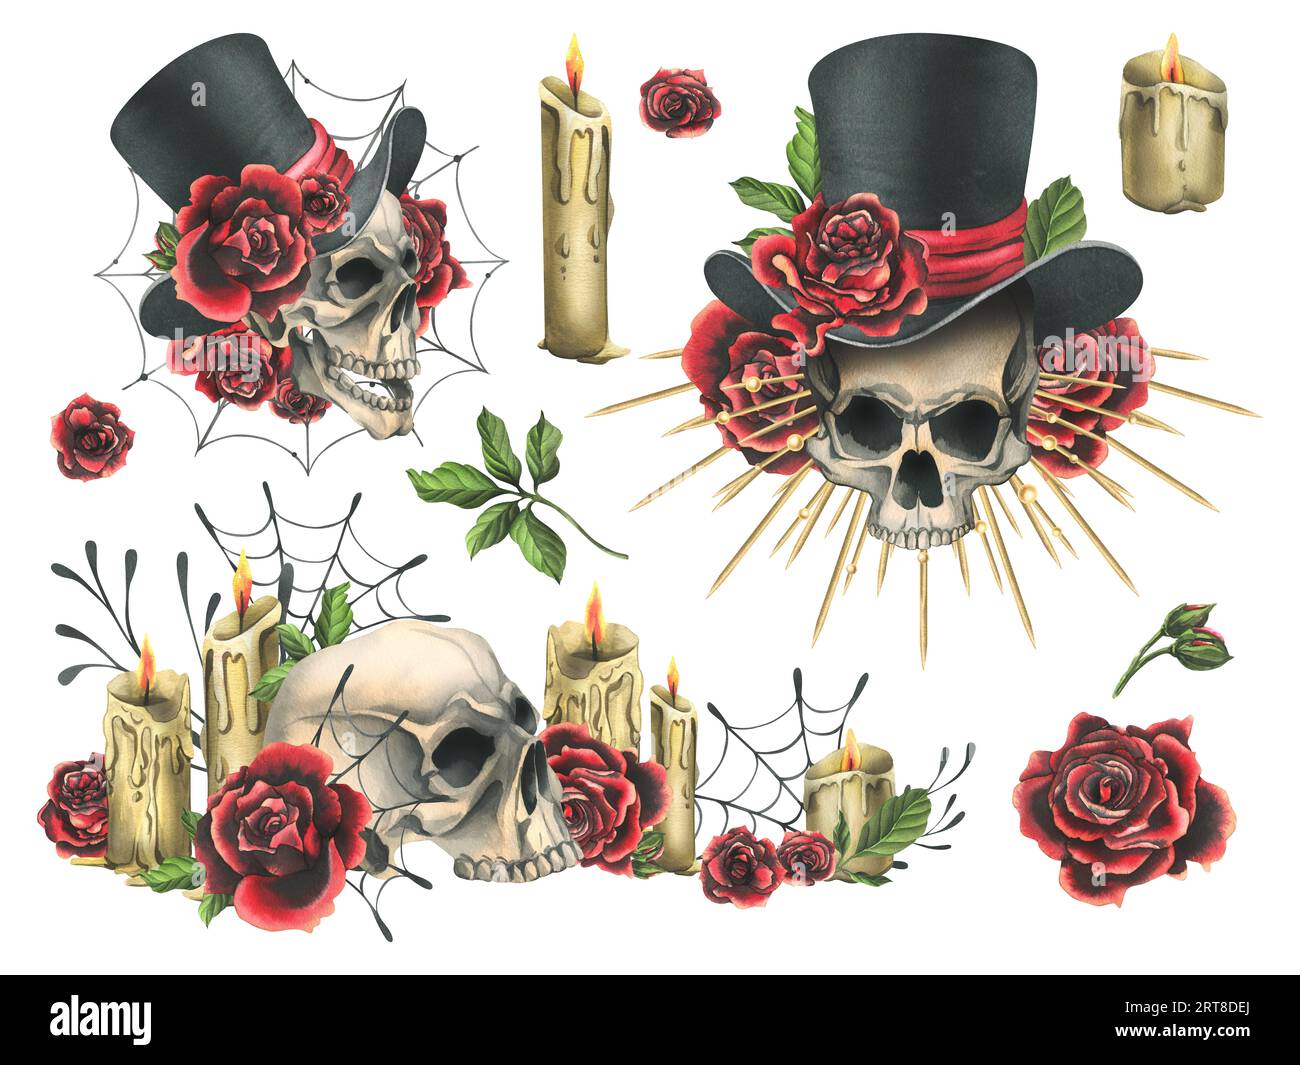 Crâne humain dans un chapeau haut de gamme avec des roses rouges, une couronne d'or avec des rayons, des bougies. Illustration aquarelle dessinée à la main pour le jour des morts, halloween, Dia de Banque D'Images